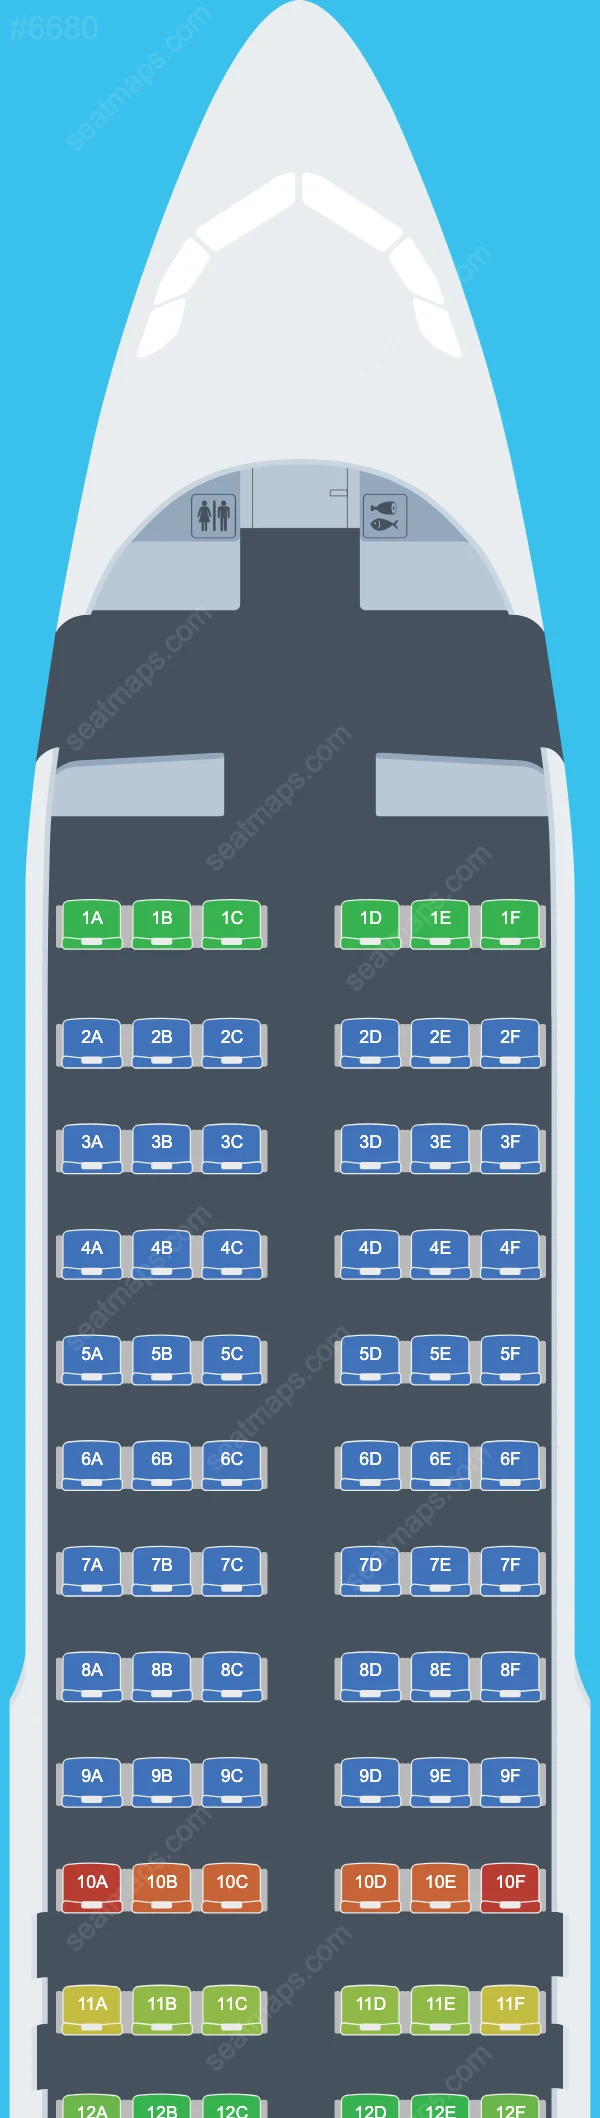 TAP Air Portugal Airbus A320 Seat Maps A320-200